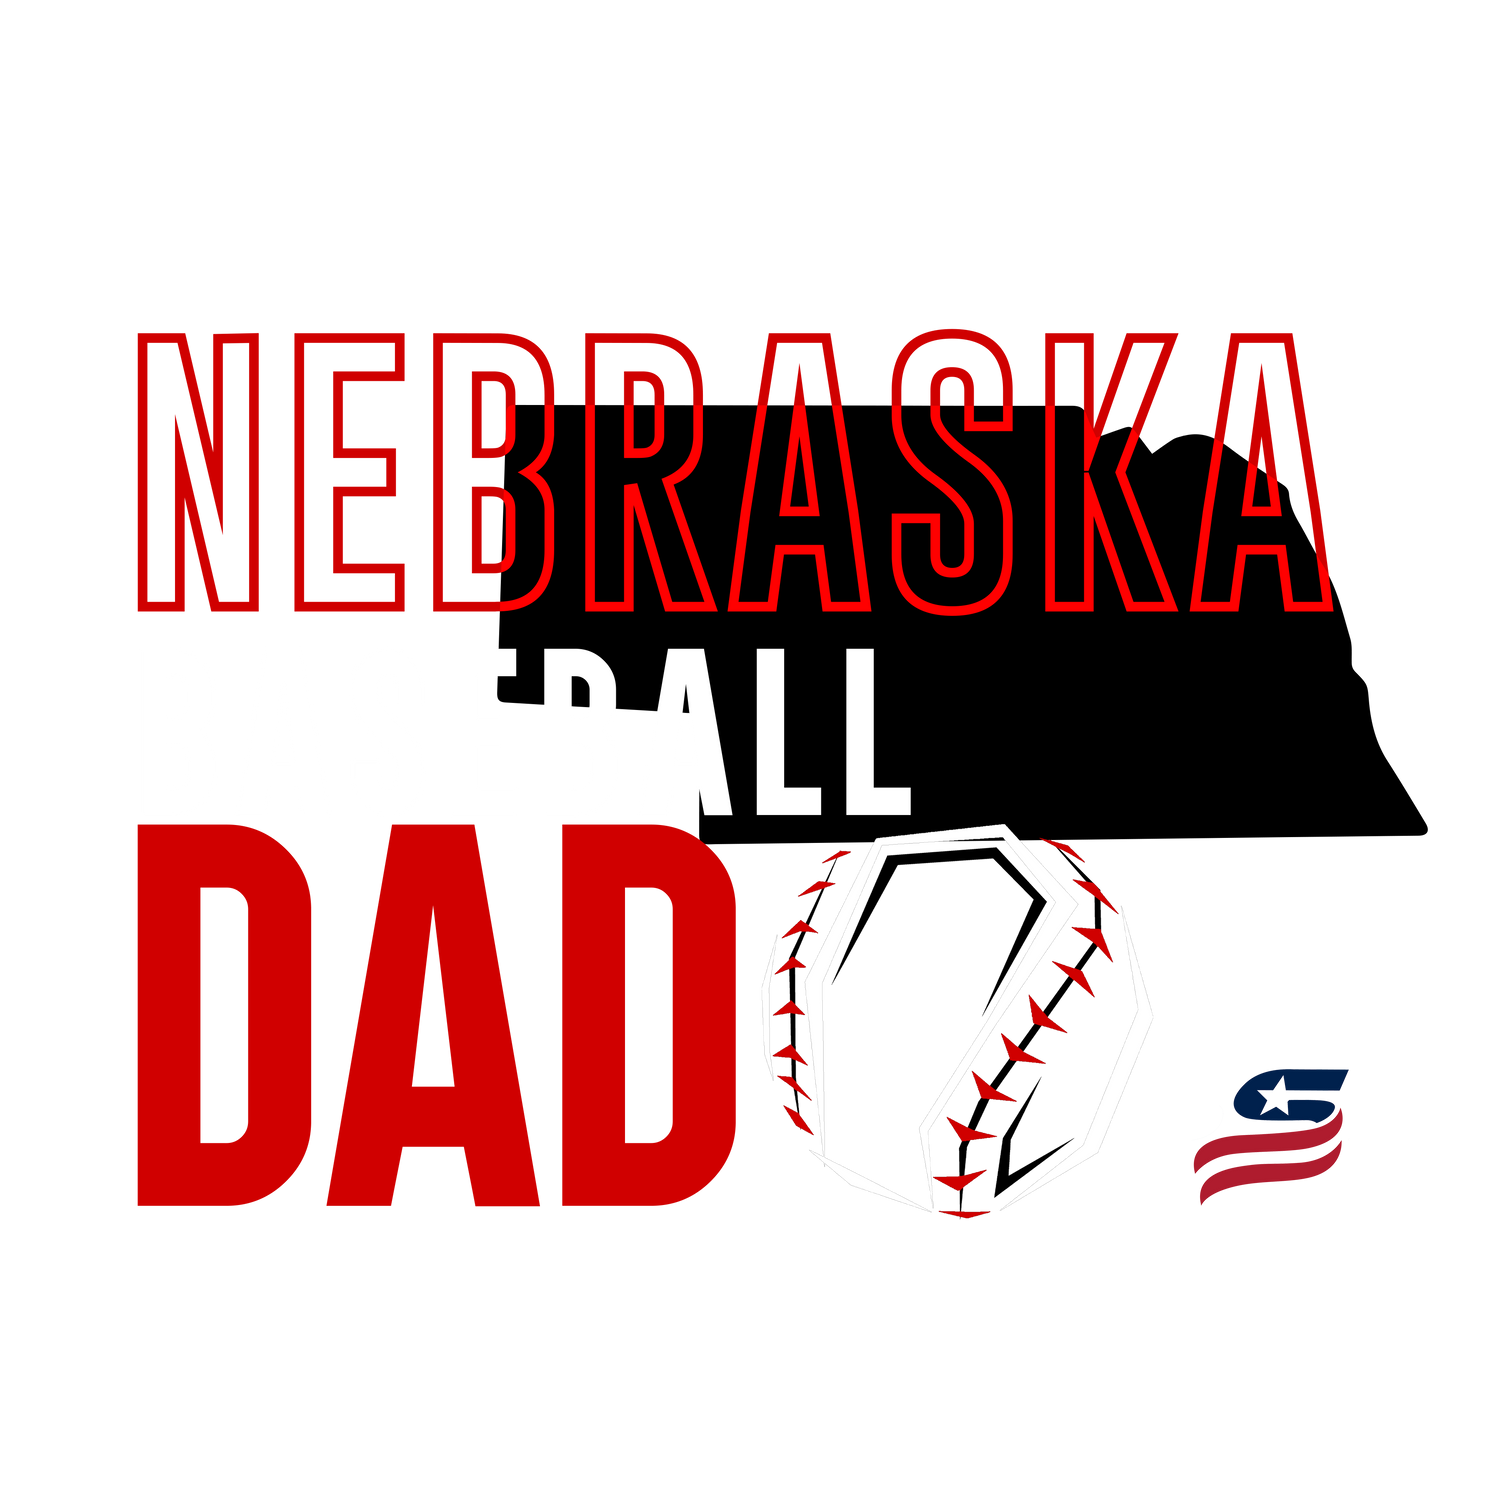 Nebraska Dad